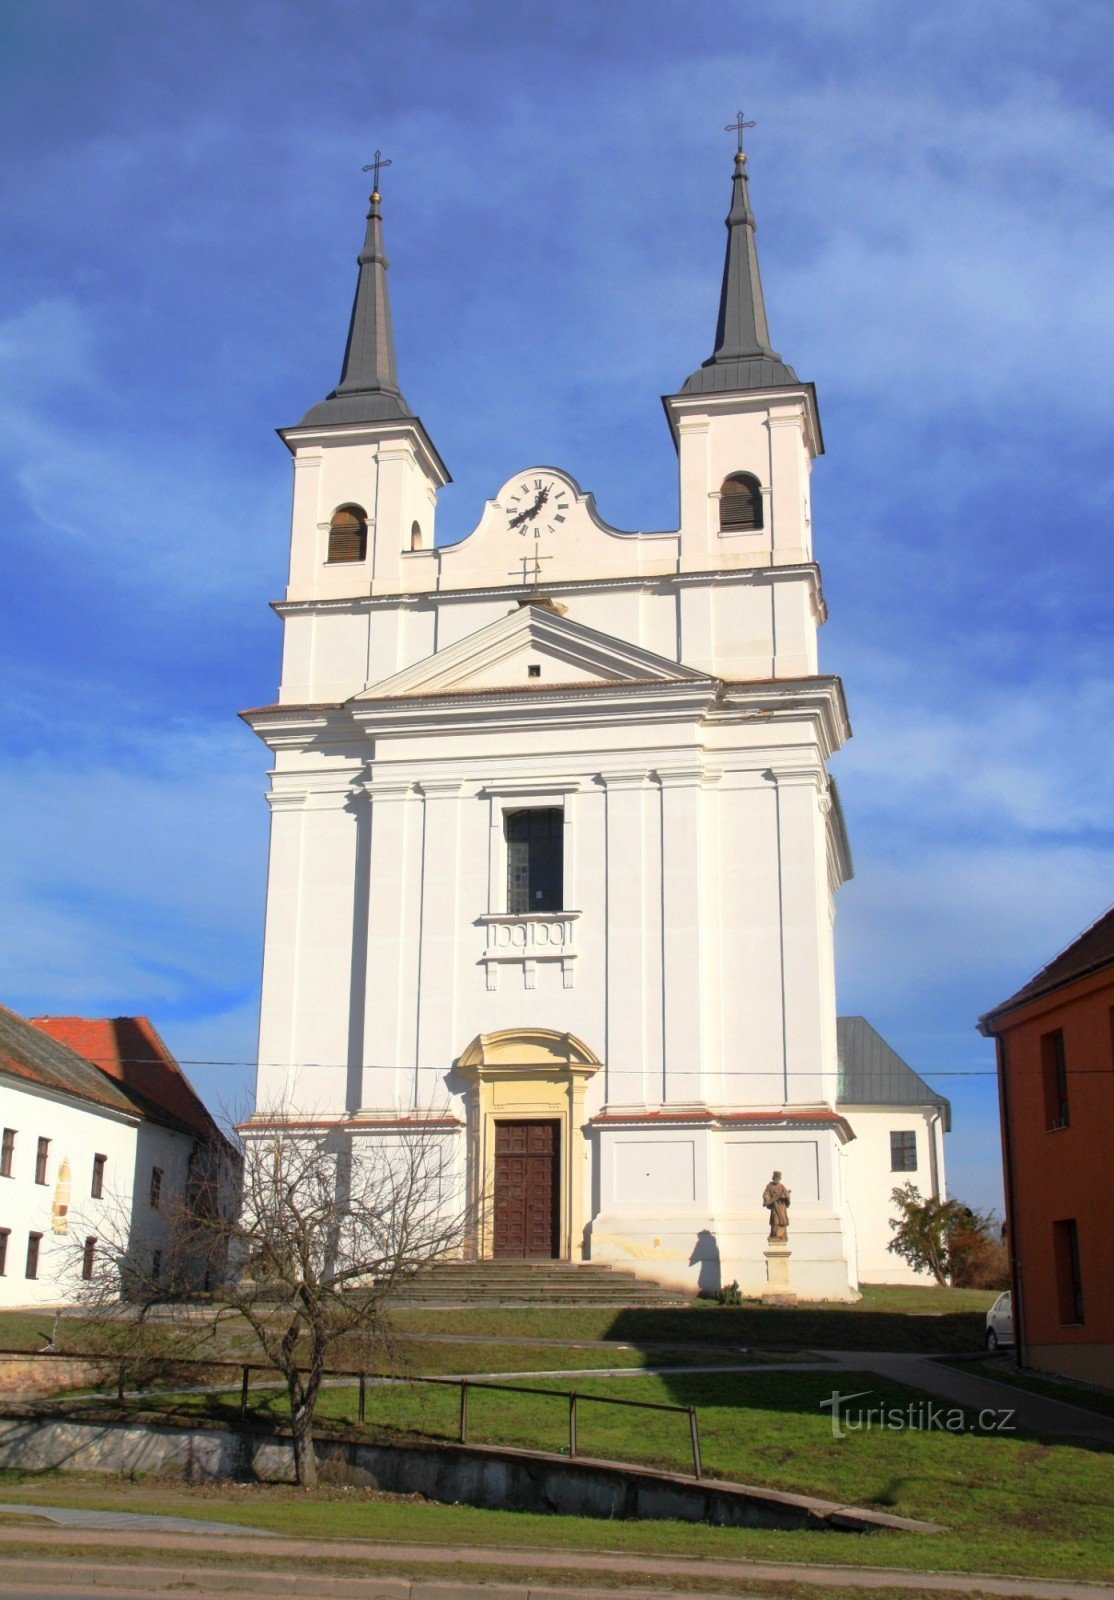 La caratteristica dominante della città è la Chiesa della Santissima Trinità